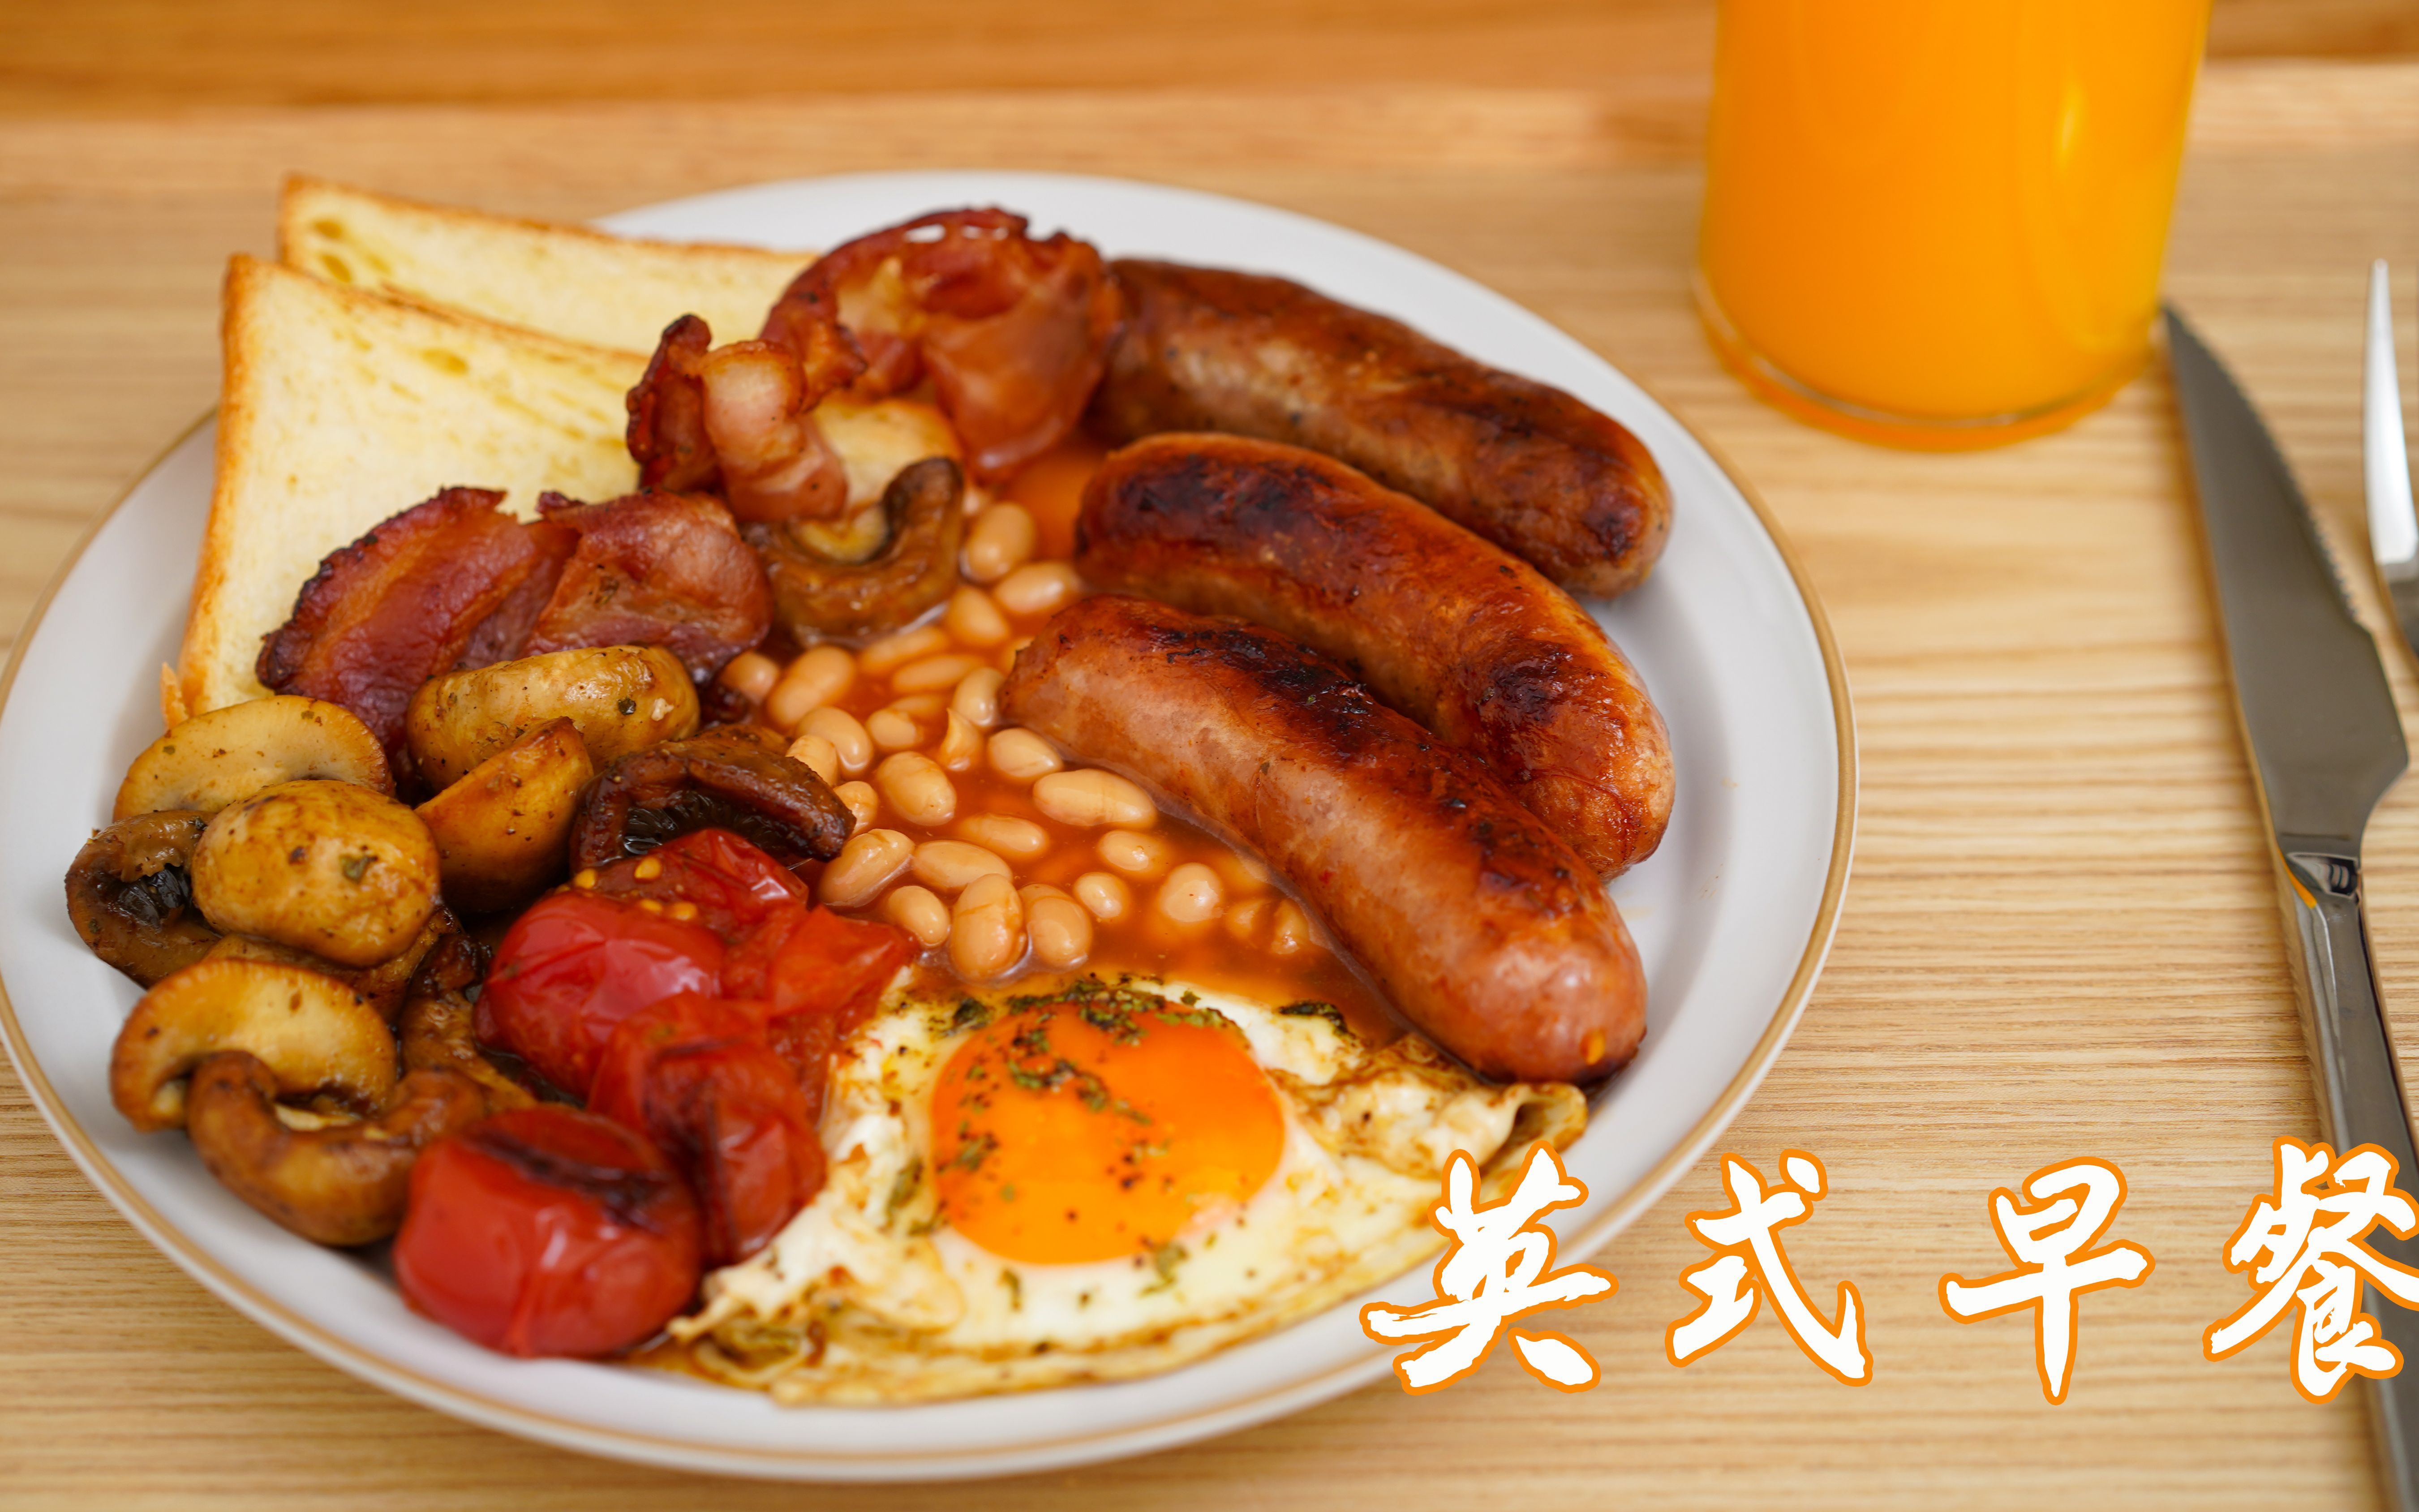 正宗英式早餐 满满一大盘 在家就能做 超满足